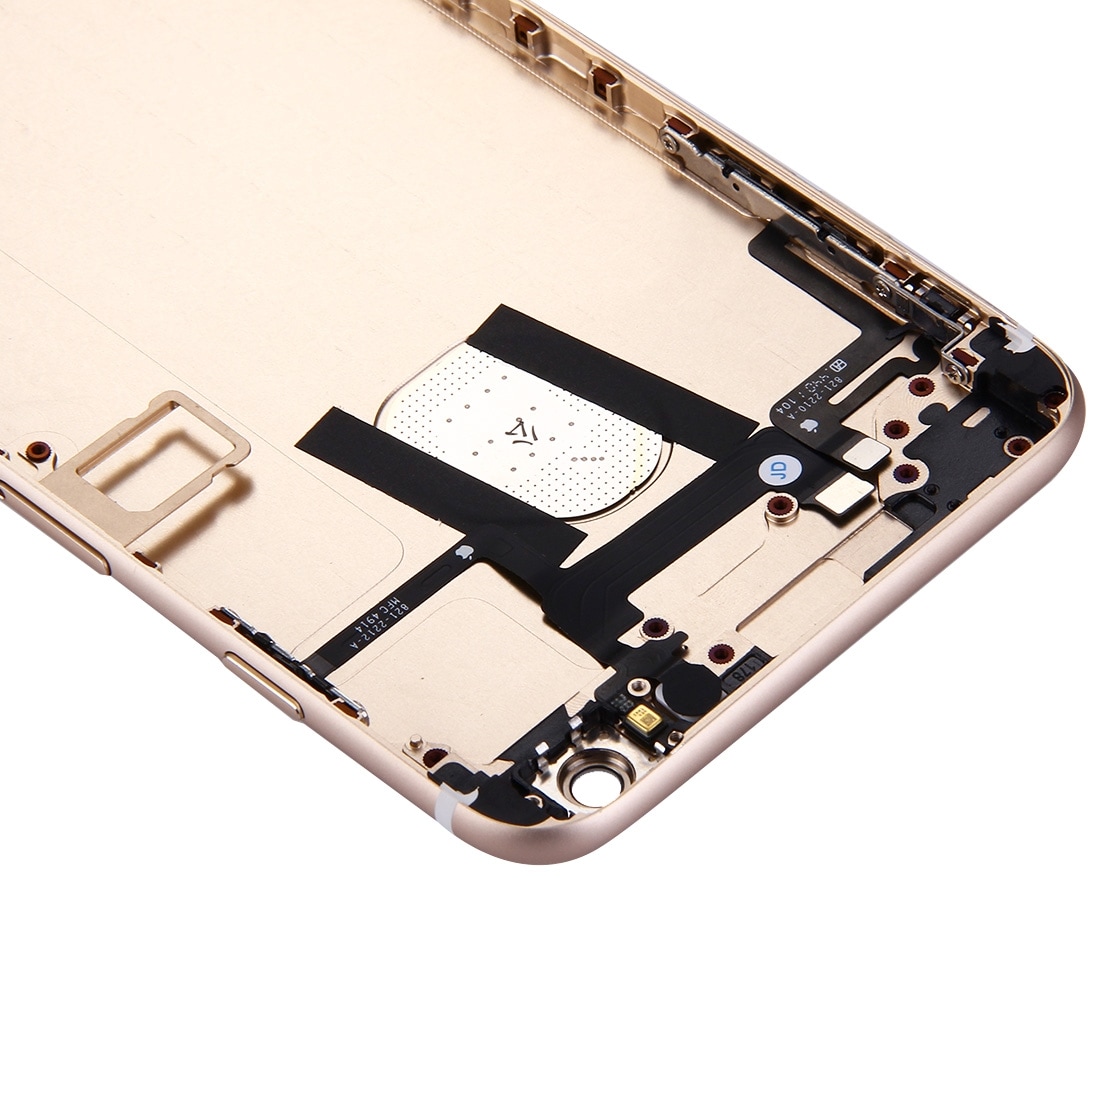 Komplett skalbyte iPhone 6 Plus - Guld